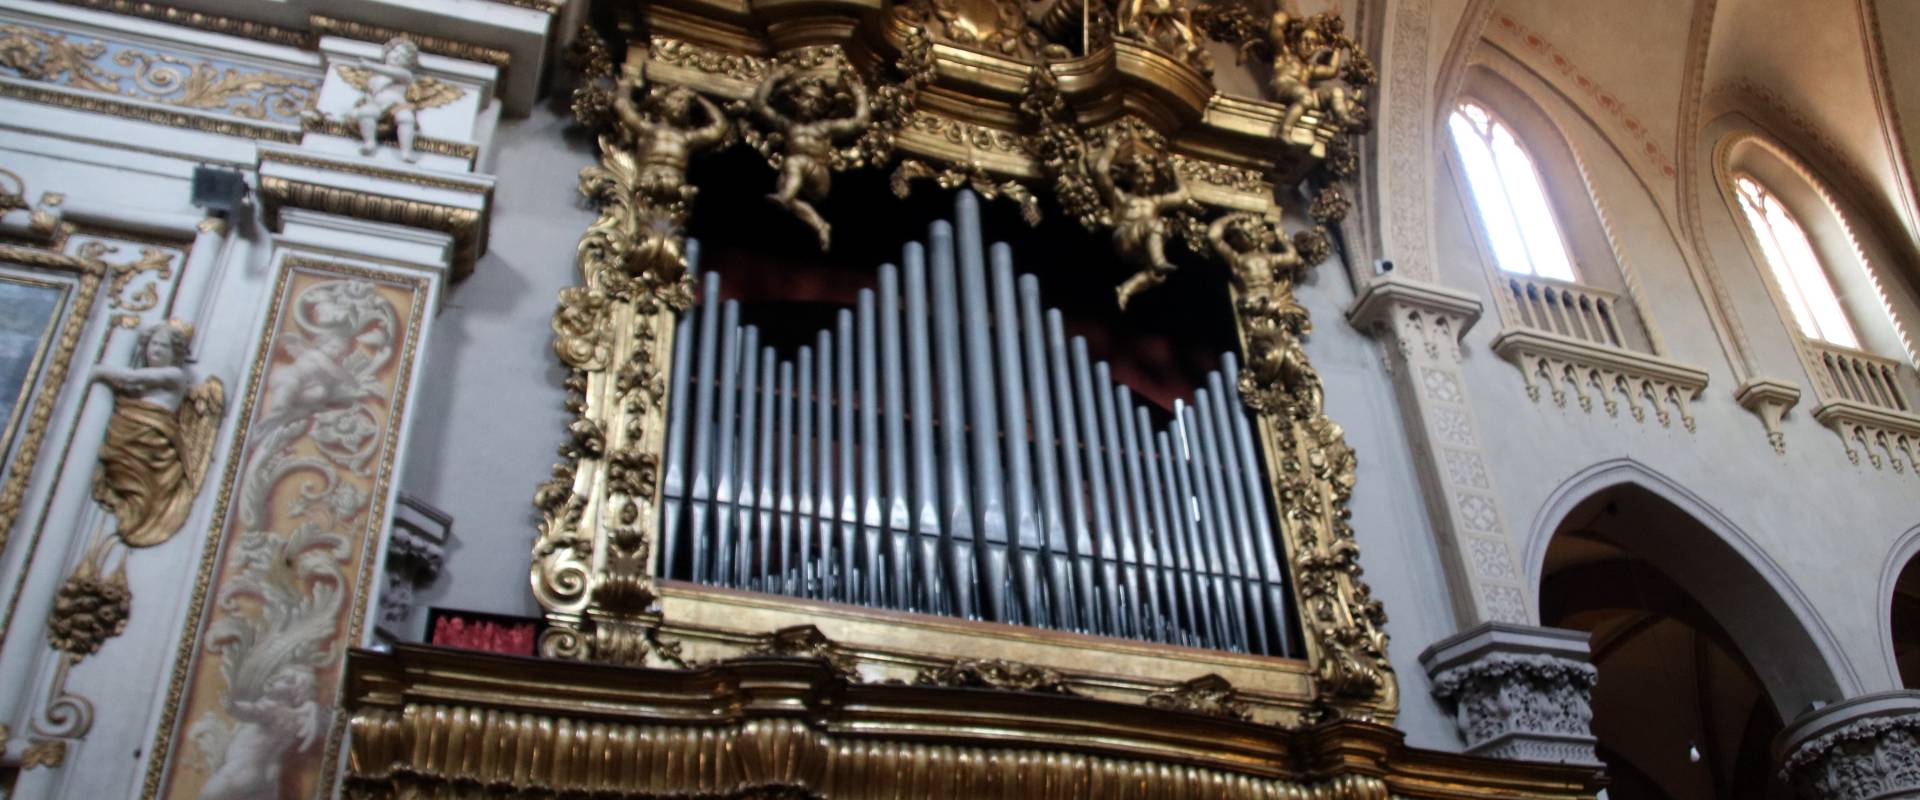 Basilica di Sant'Antonino (Piacenza), organo 01 foto di Mongolo1984